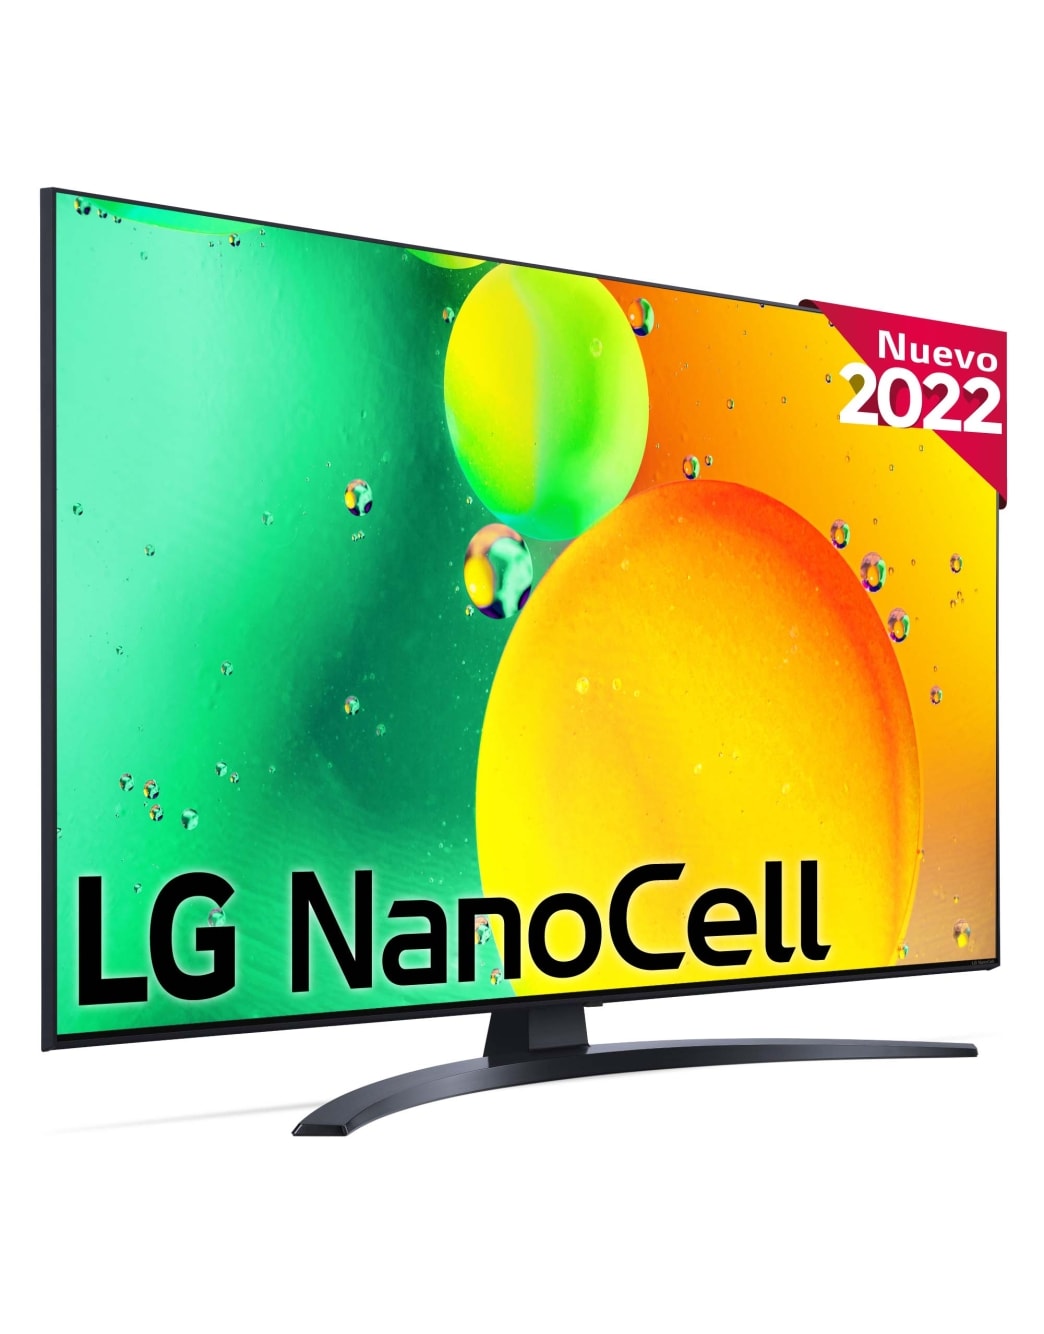 LG Televisor LG 4K Nanocell, Procesador de Gran Potencia 4K a5 Gen 5,  compatible con formatos HDR 10, HLG y HGiG, Smart TV webOS22 | LG España